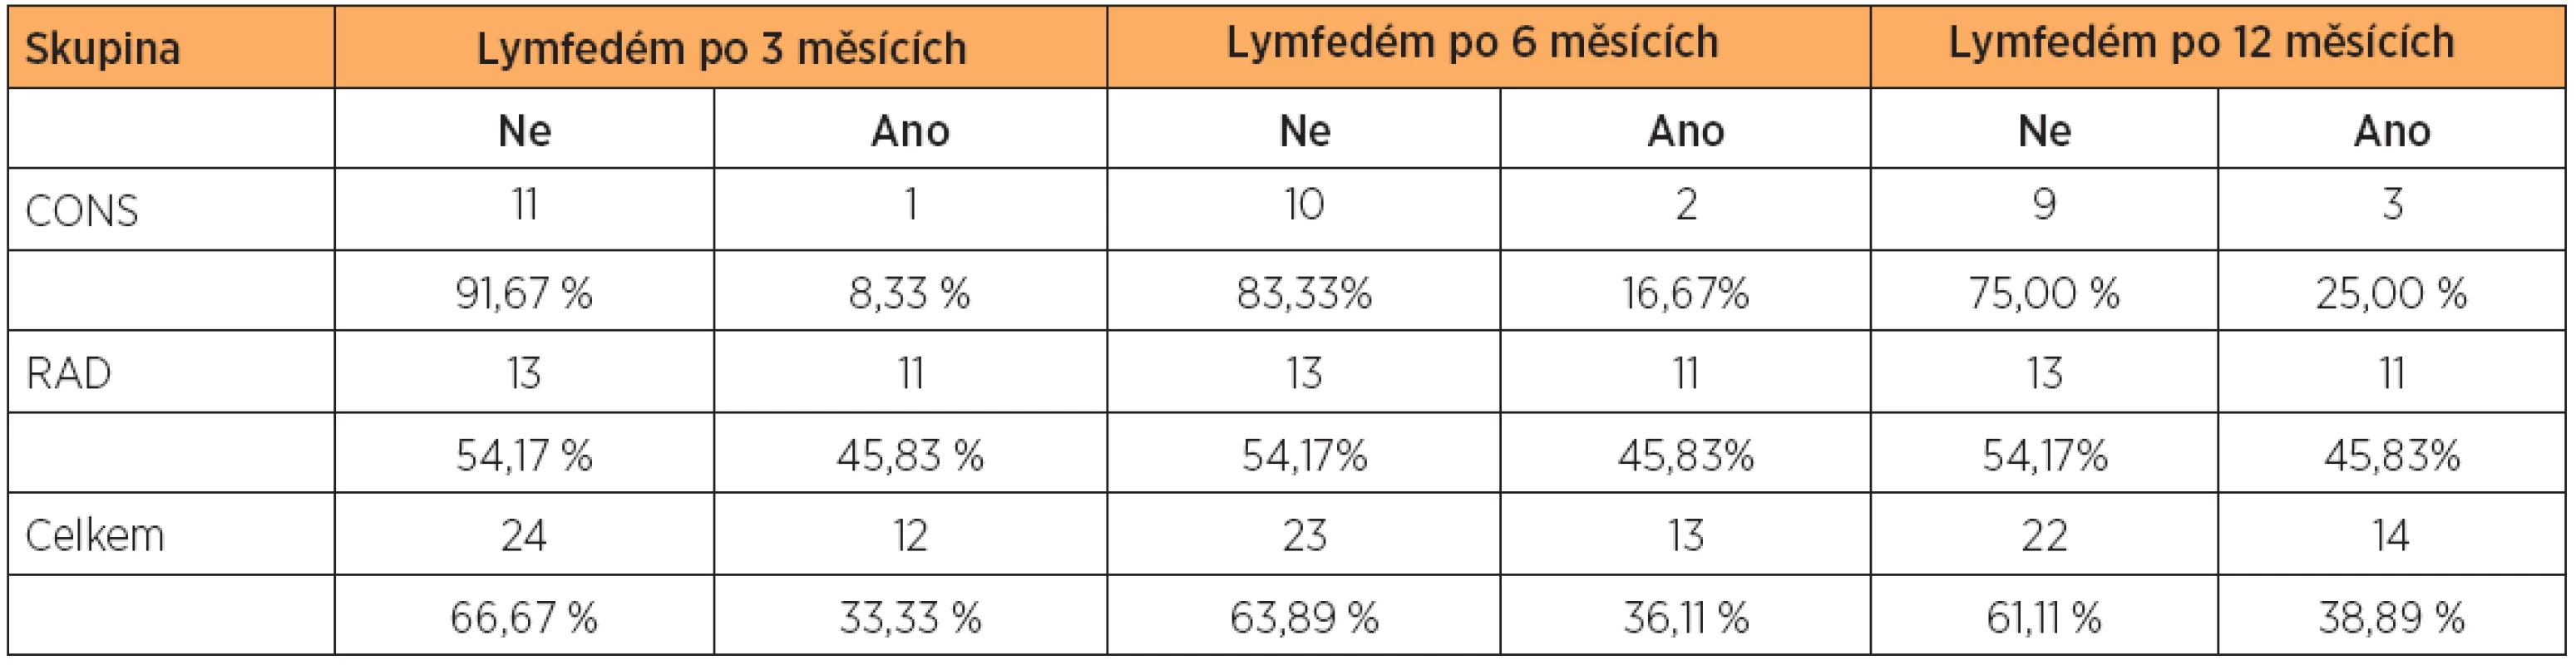 Prevalence lymfedémů diagnostikovaných za 3, 6 a 12 měsíců po operaci karcinomu vulvy metodou měření obvodů končetin